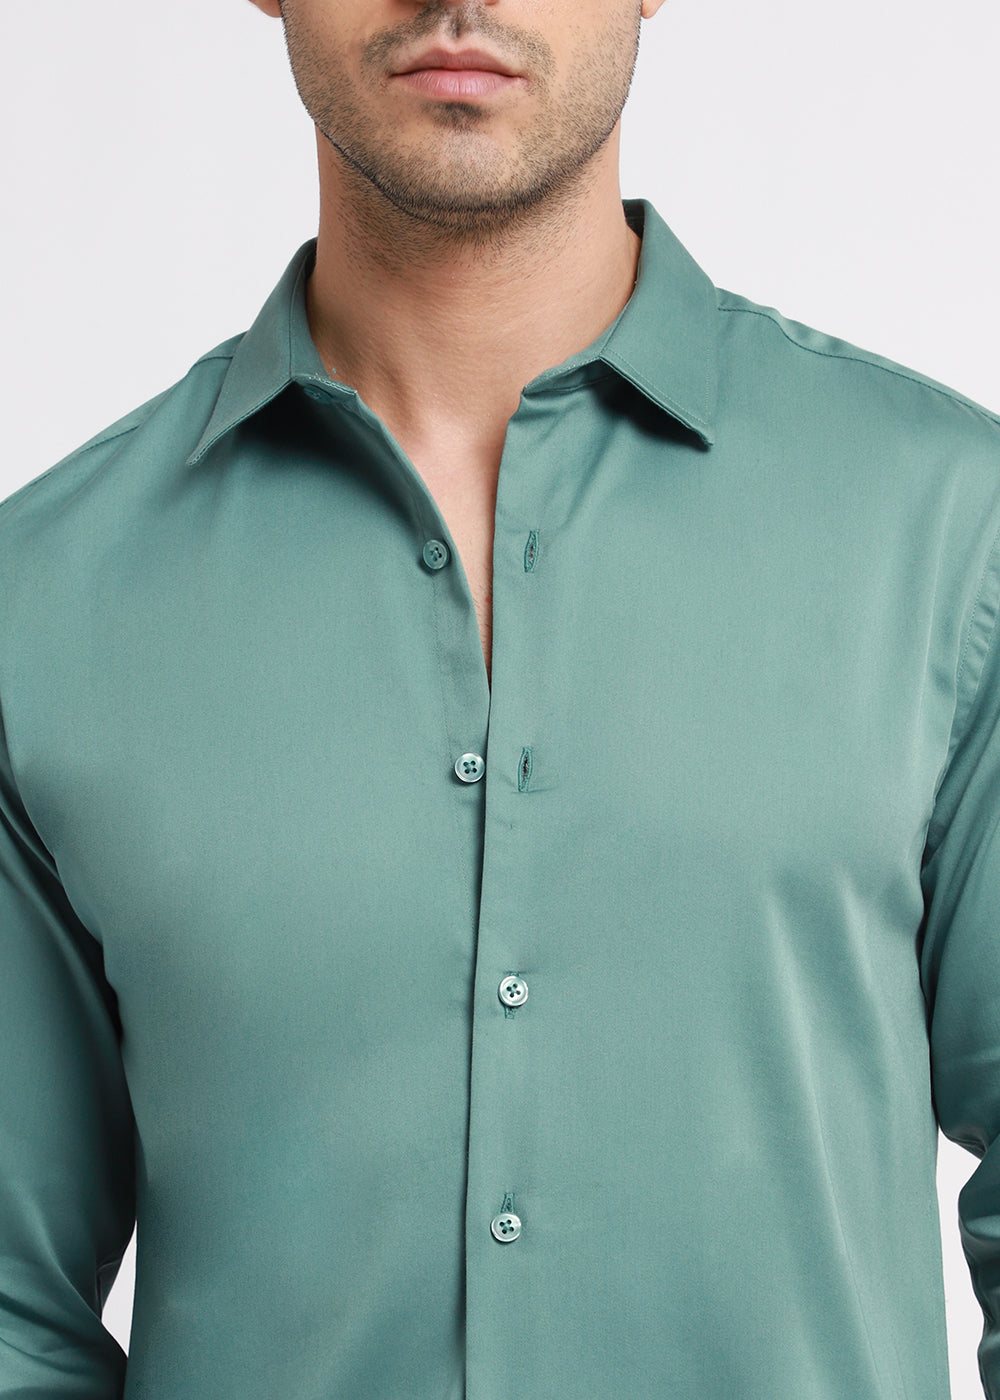 Assure Green Satin Shirt